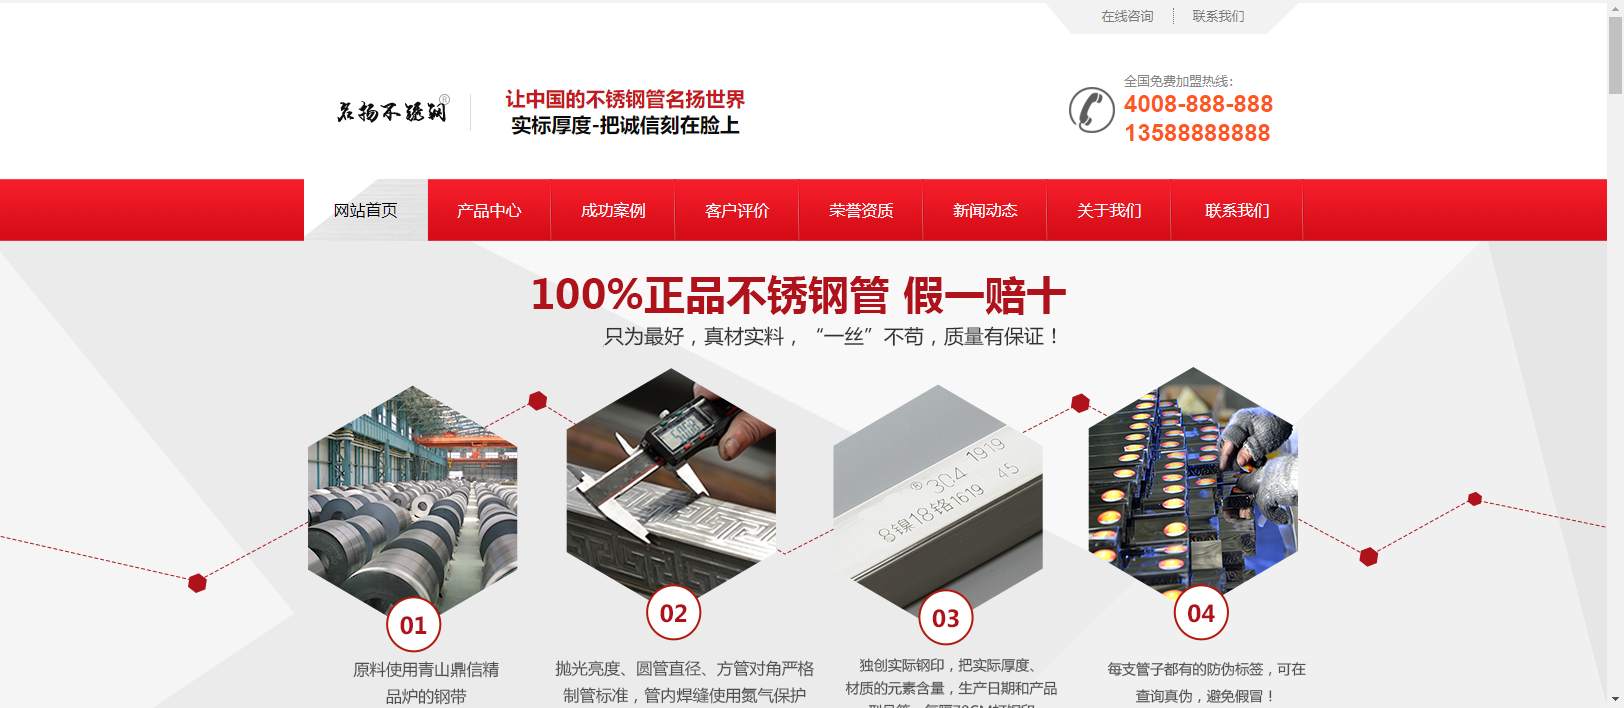 营销型钢材模板网站